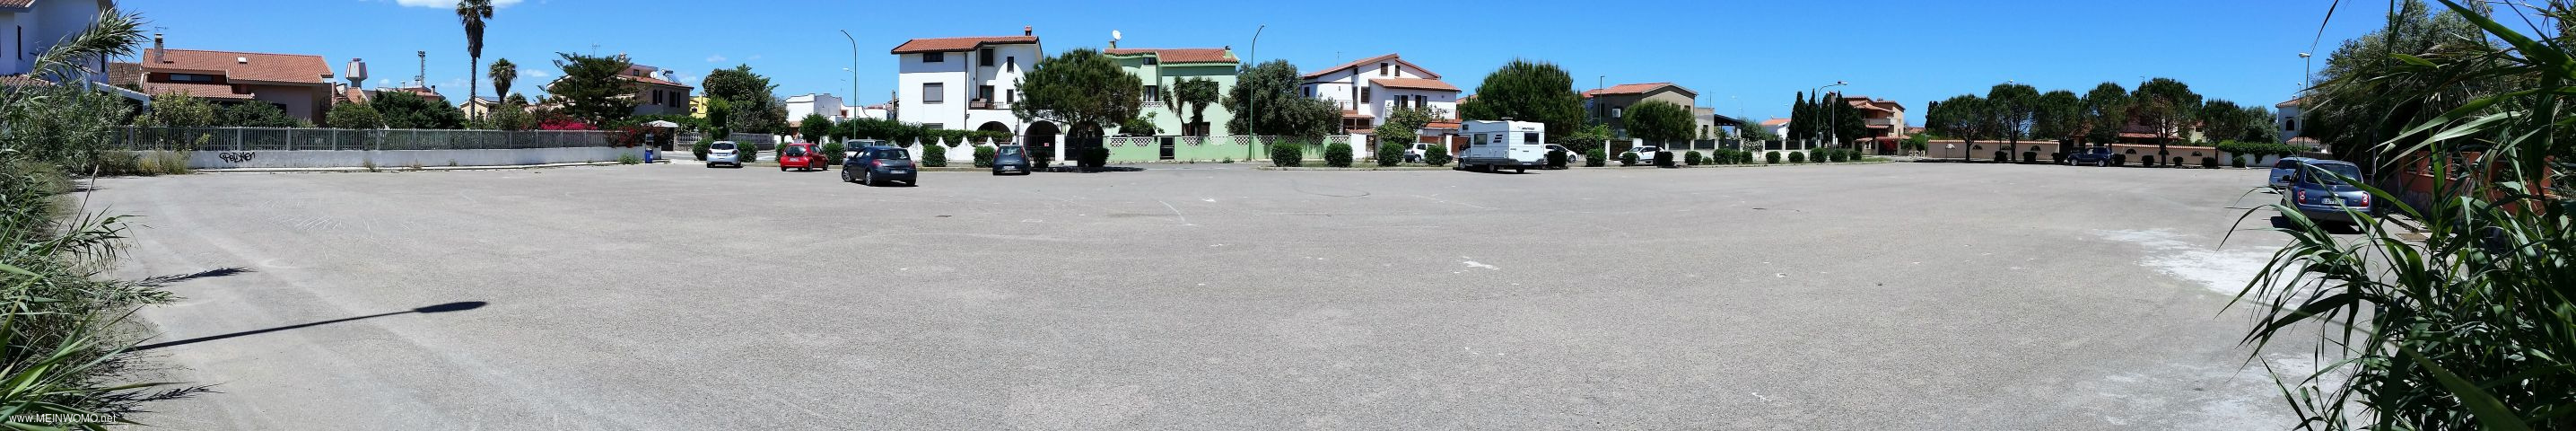  Grote parkeerplaats vlakbij het strand.